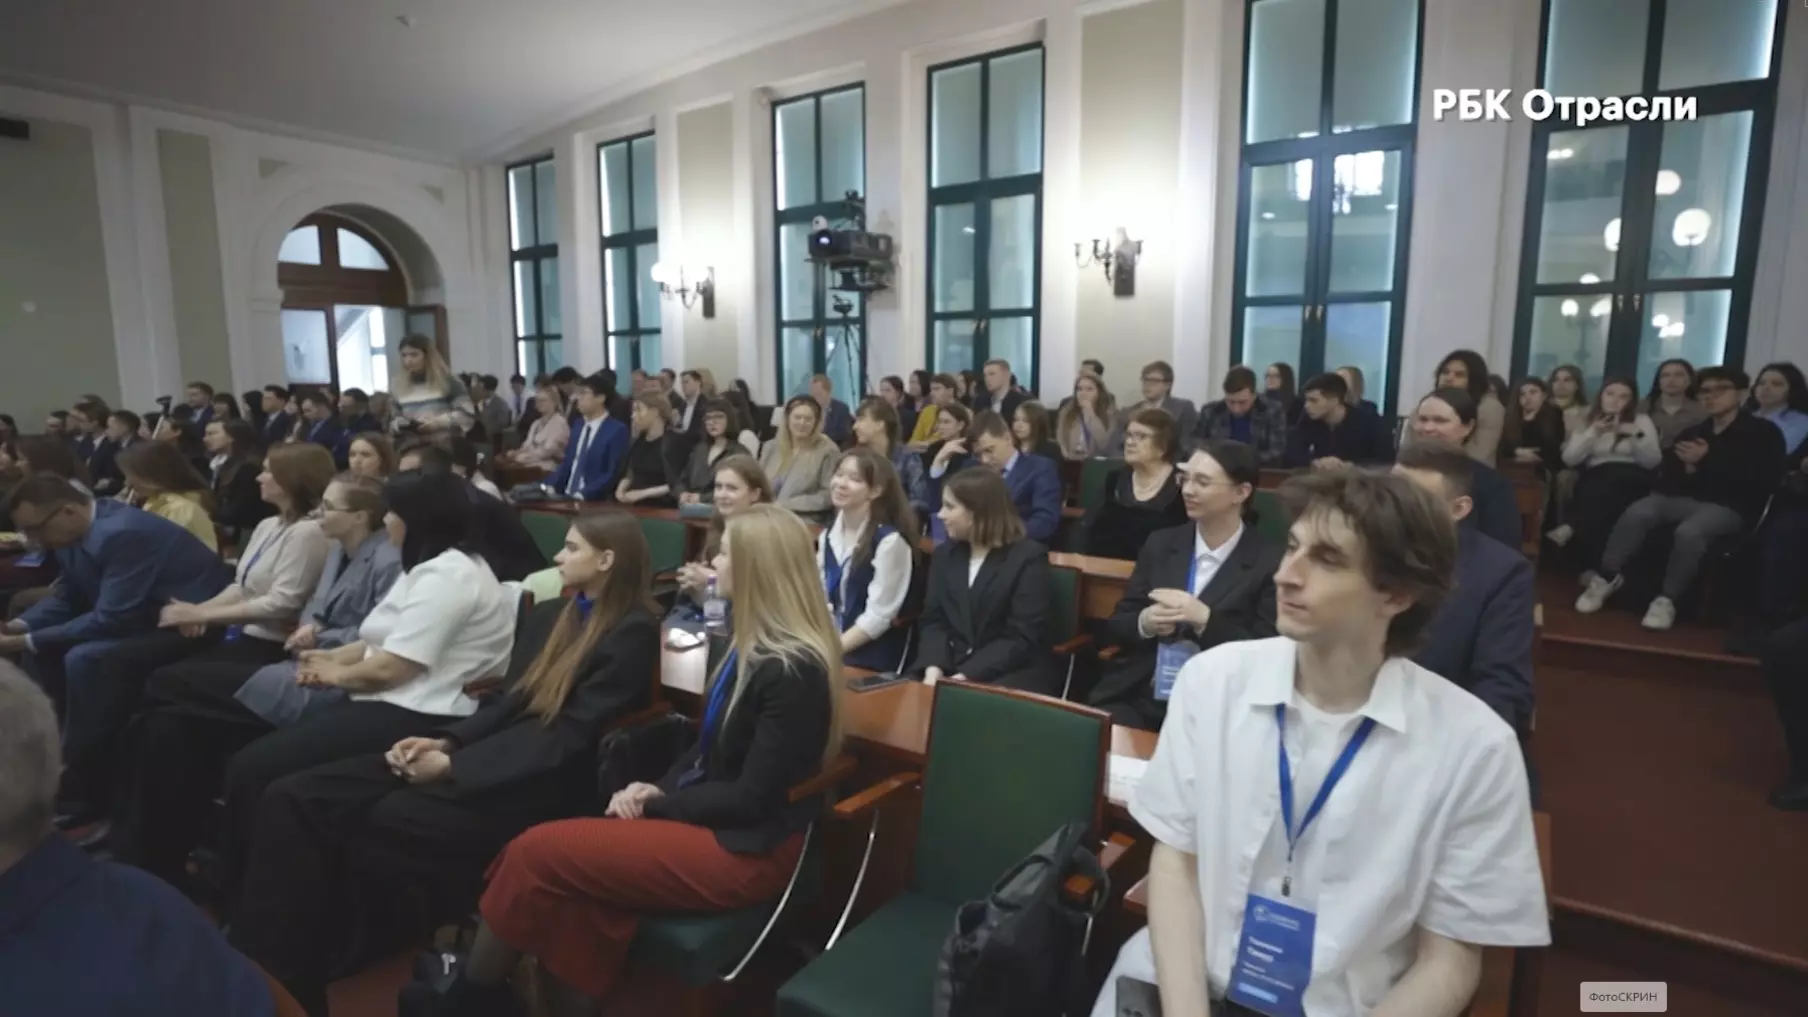 ВАВТ и ТПП РФ выступили организаторами международного студенческого конкурса